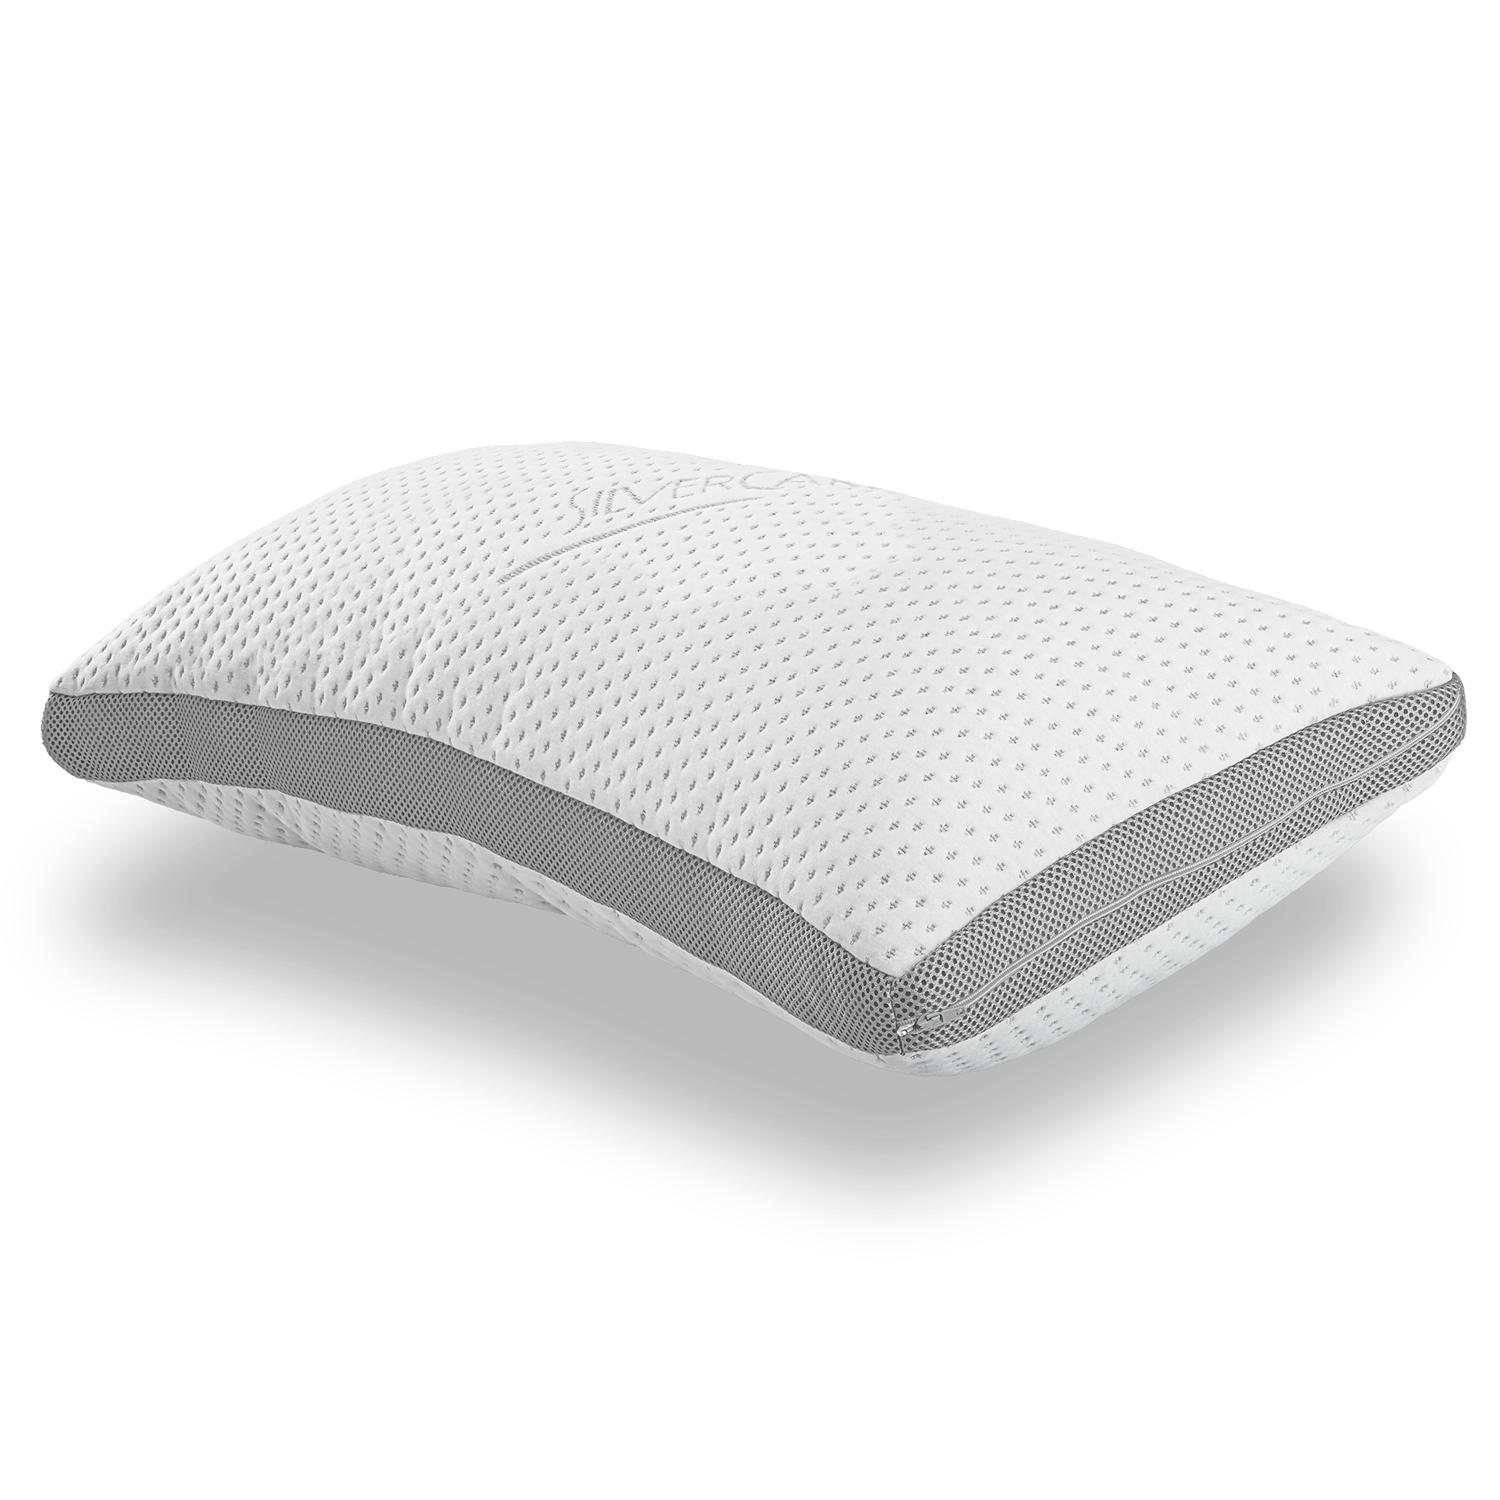 Supportho almohada confortable efecto gel 40 x 80 cm